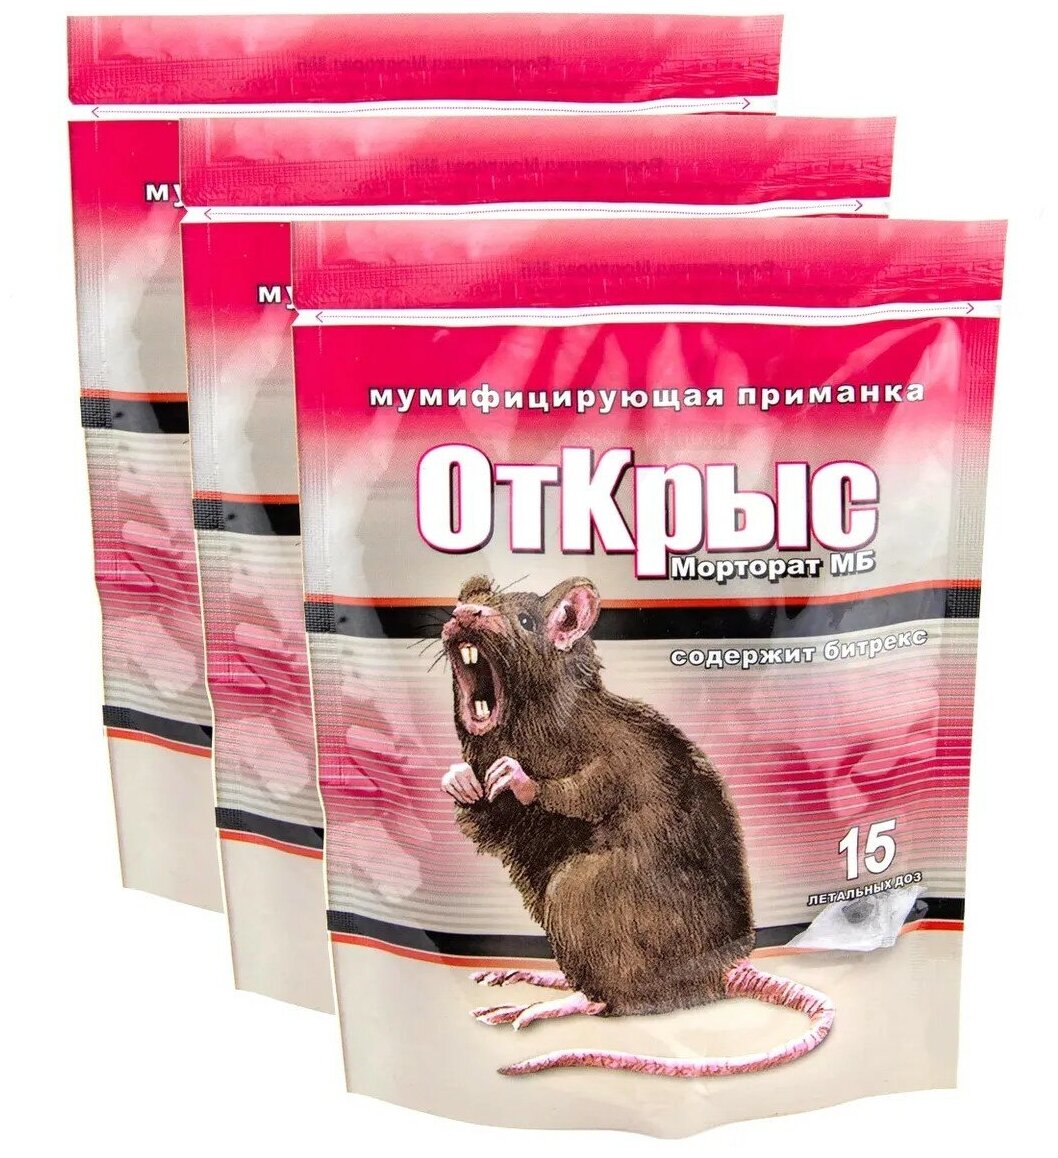 Мумифицирующая отрава - приманка от крыс и мышей Морторат 3 пакета по 150 г